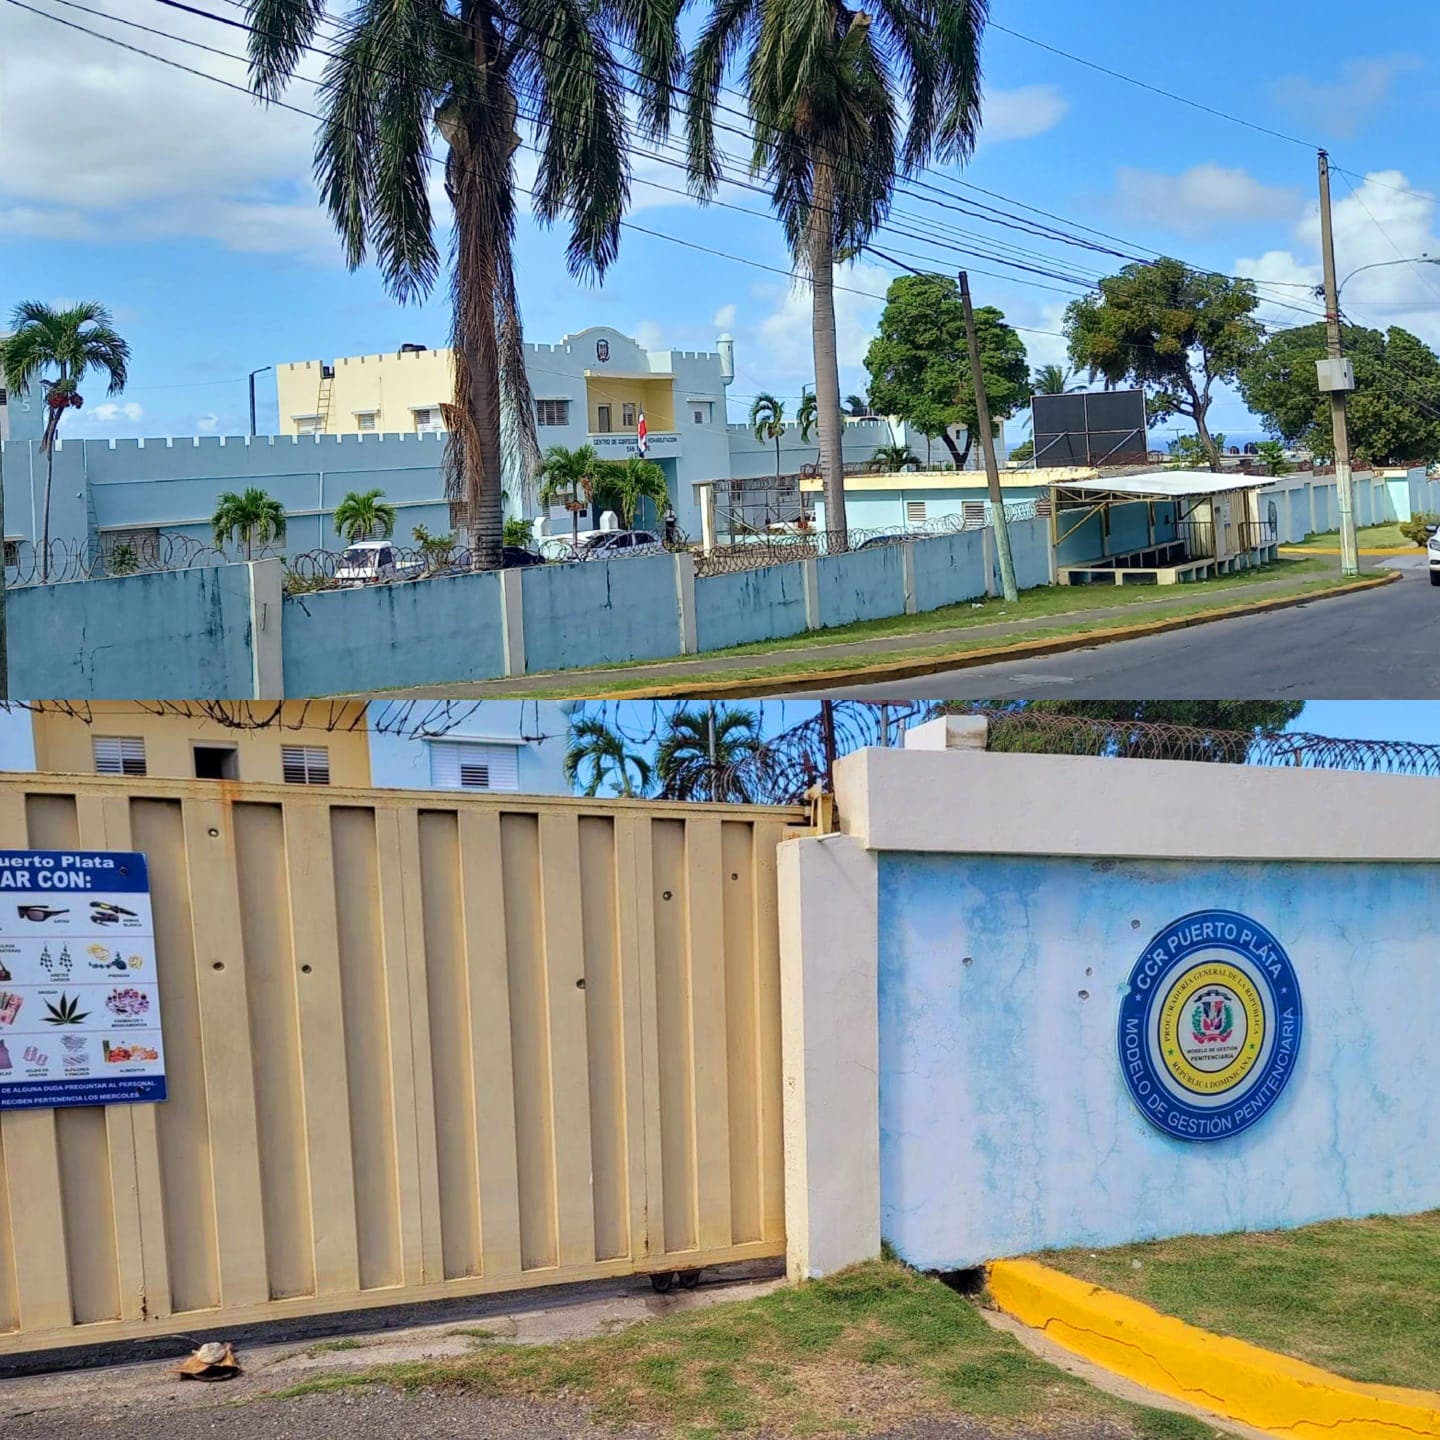 Autoridades hacen mutis ante varios incidentes ocurridos en centro penitenciario de Puerto Plata